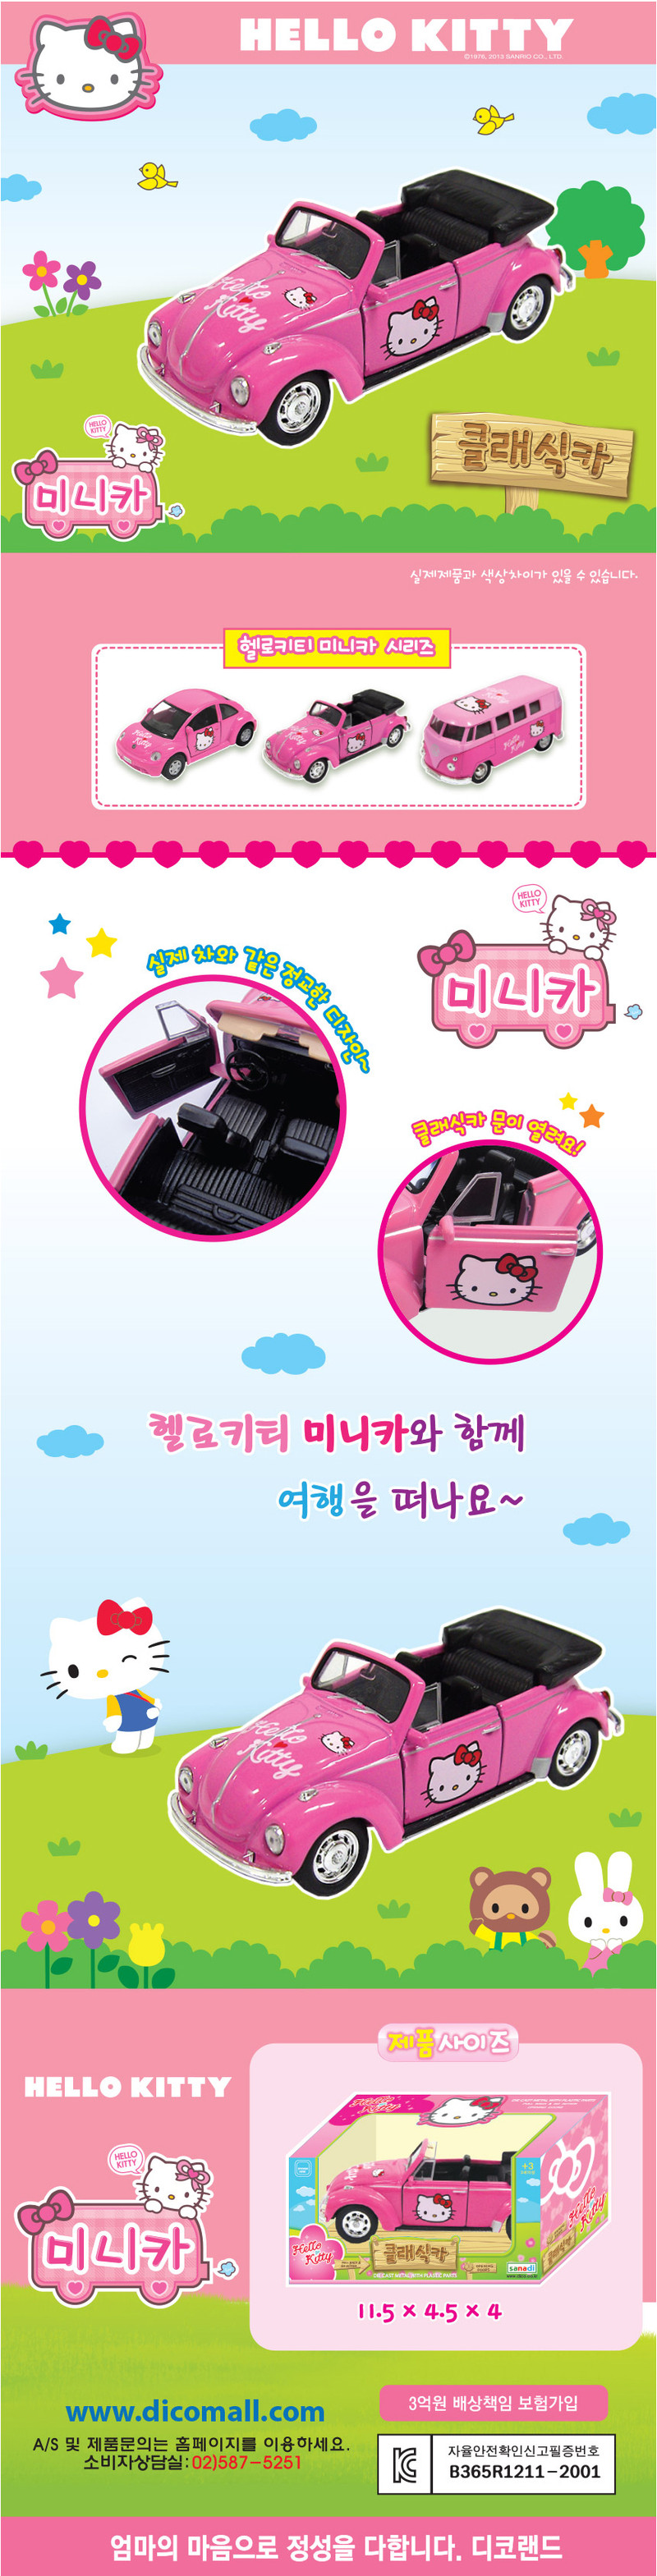 韩国进口Hellokitty可爱声光音乐回力儿童玩具合金车428509